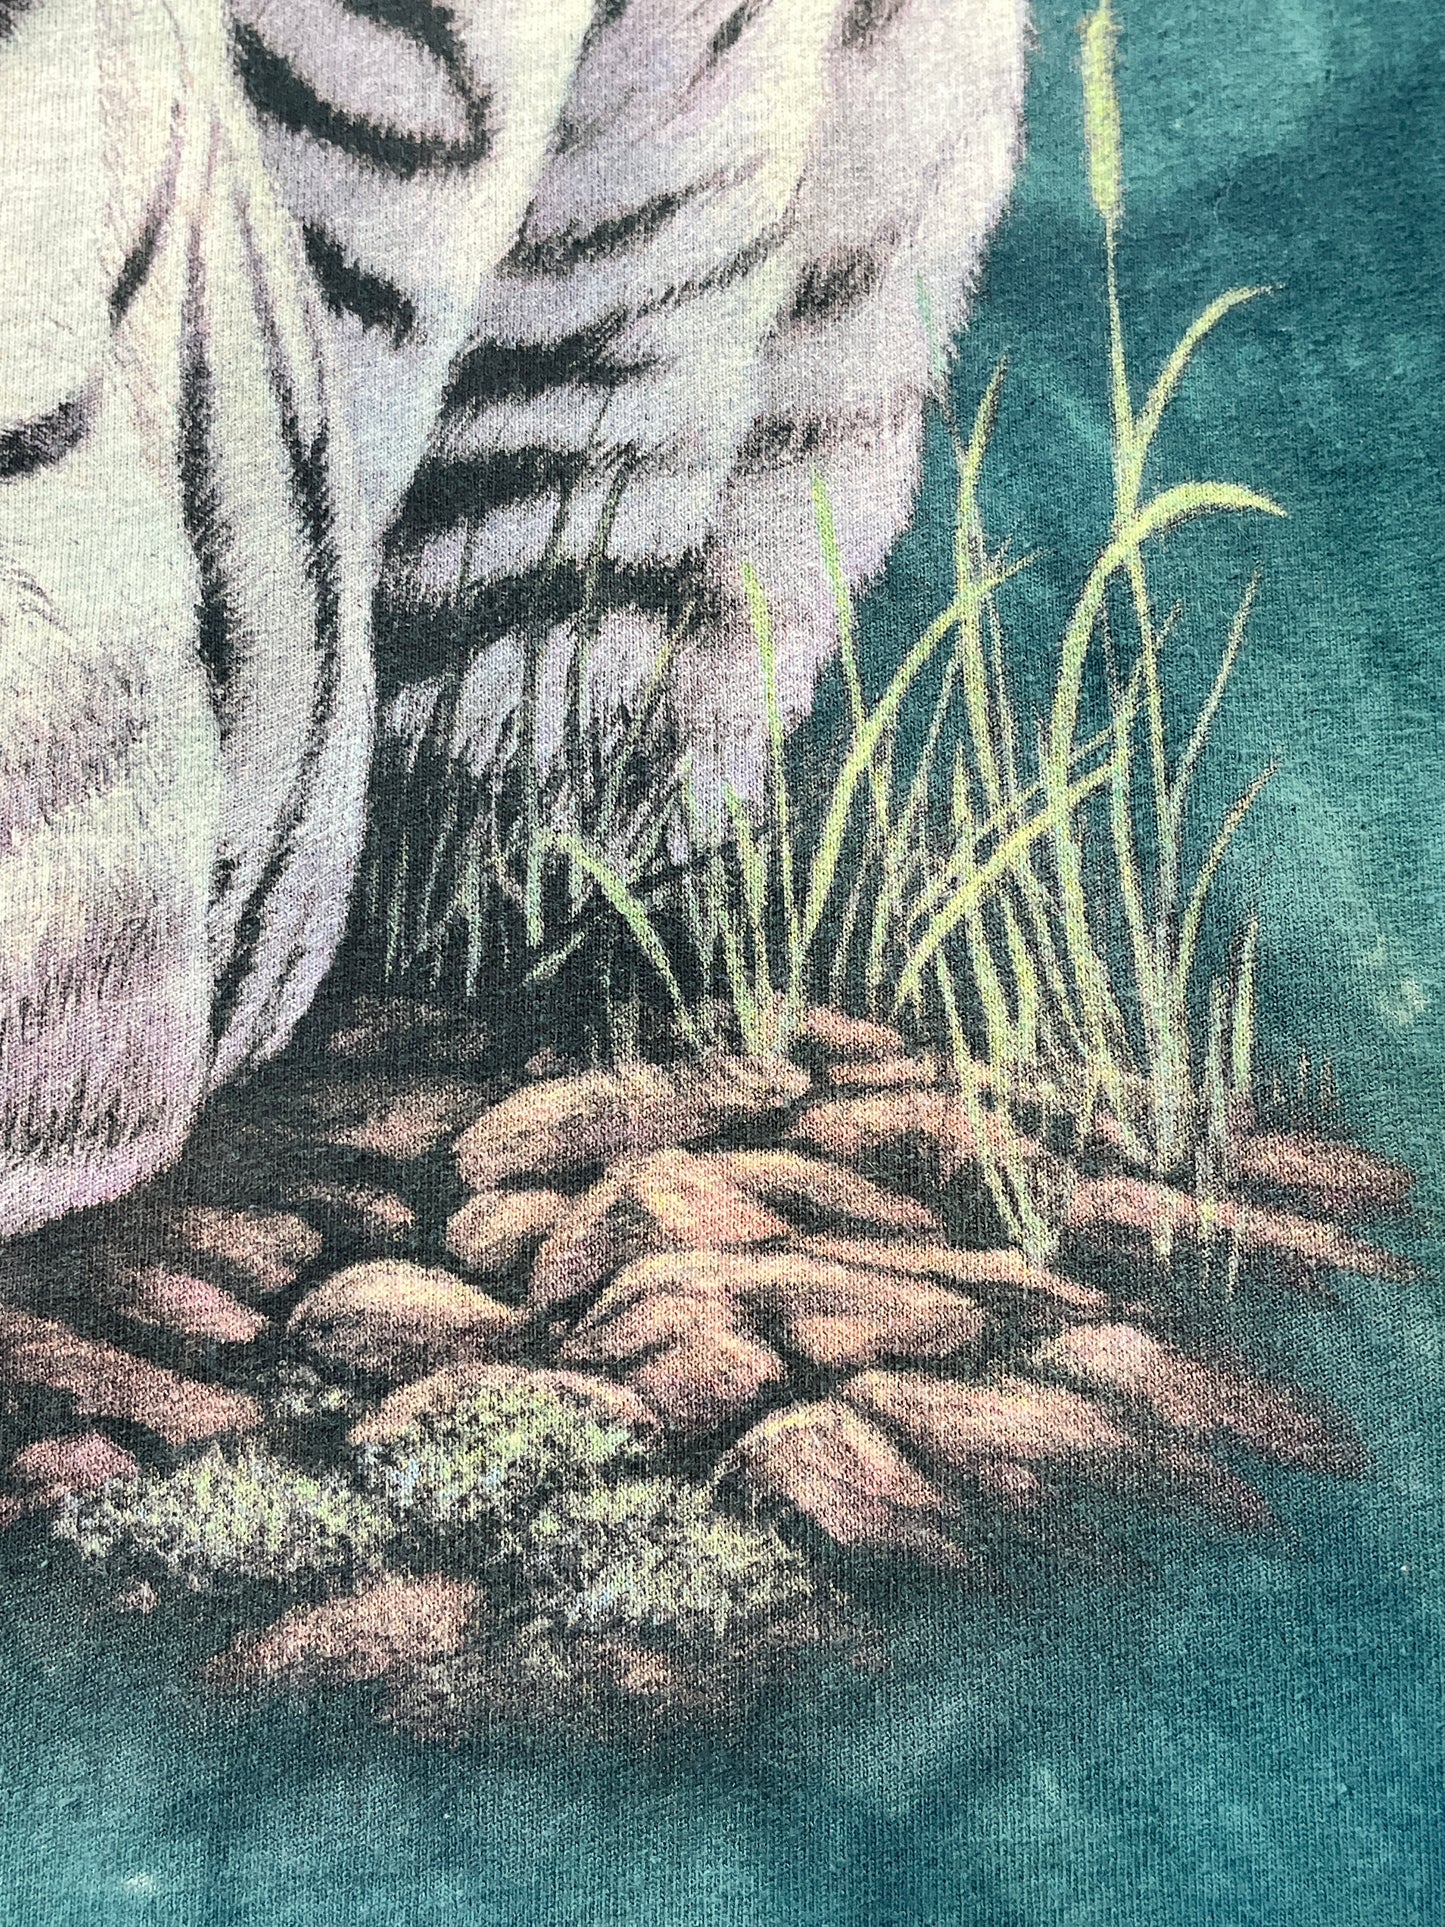 Vintage White Tiger T-Shirt Beautiful Cat Lion Animal Acid Wash